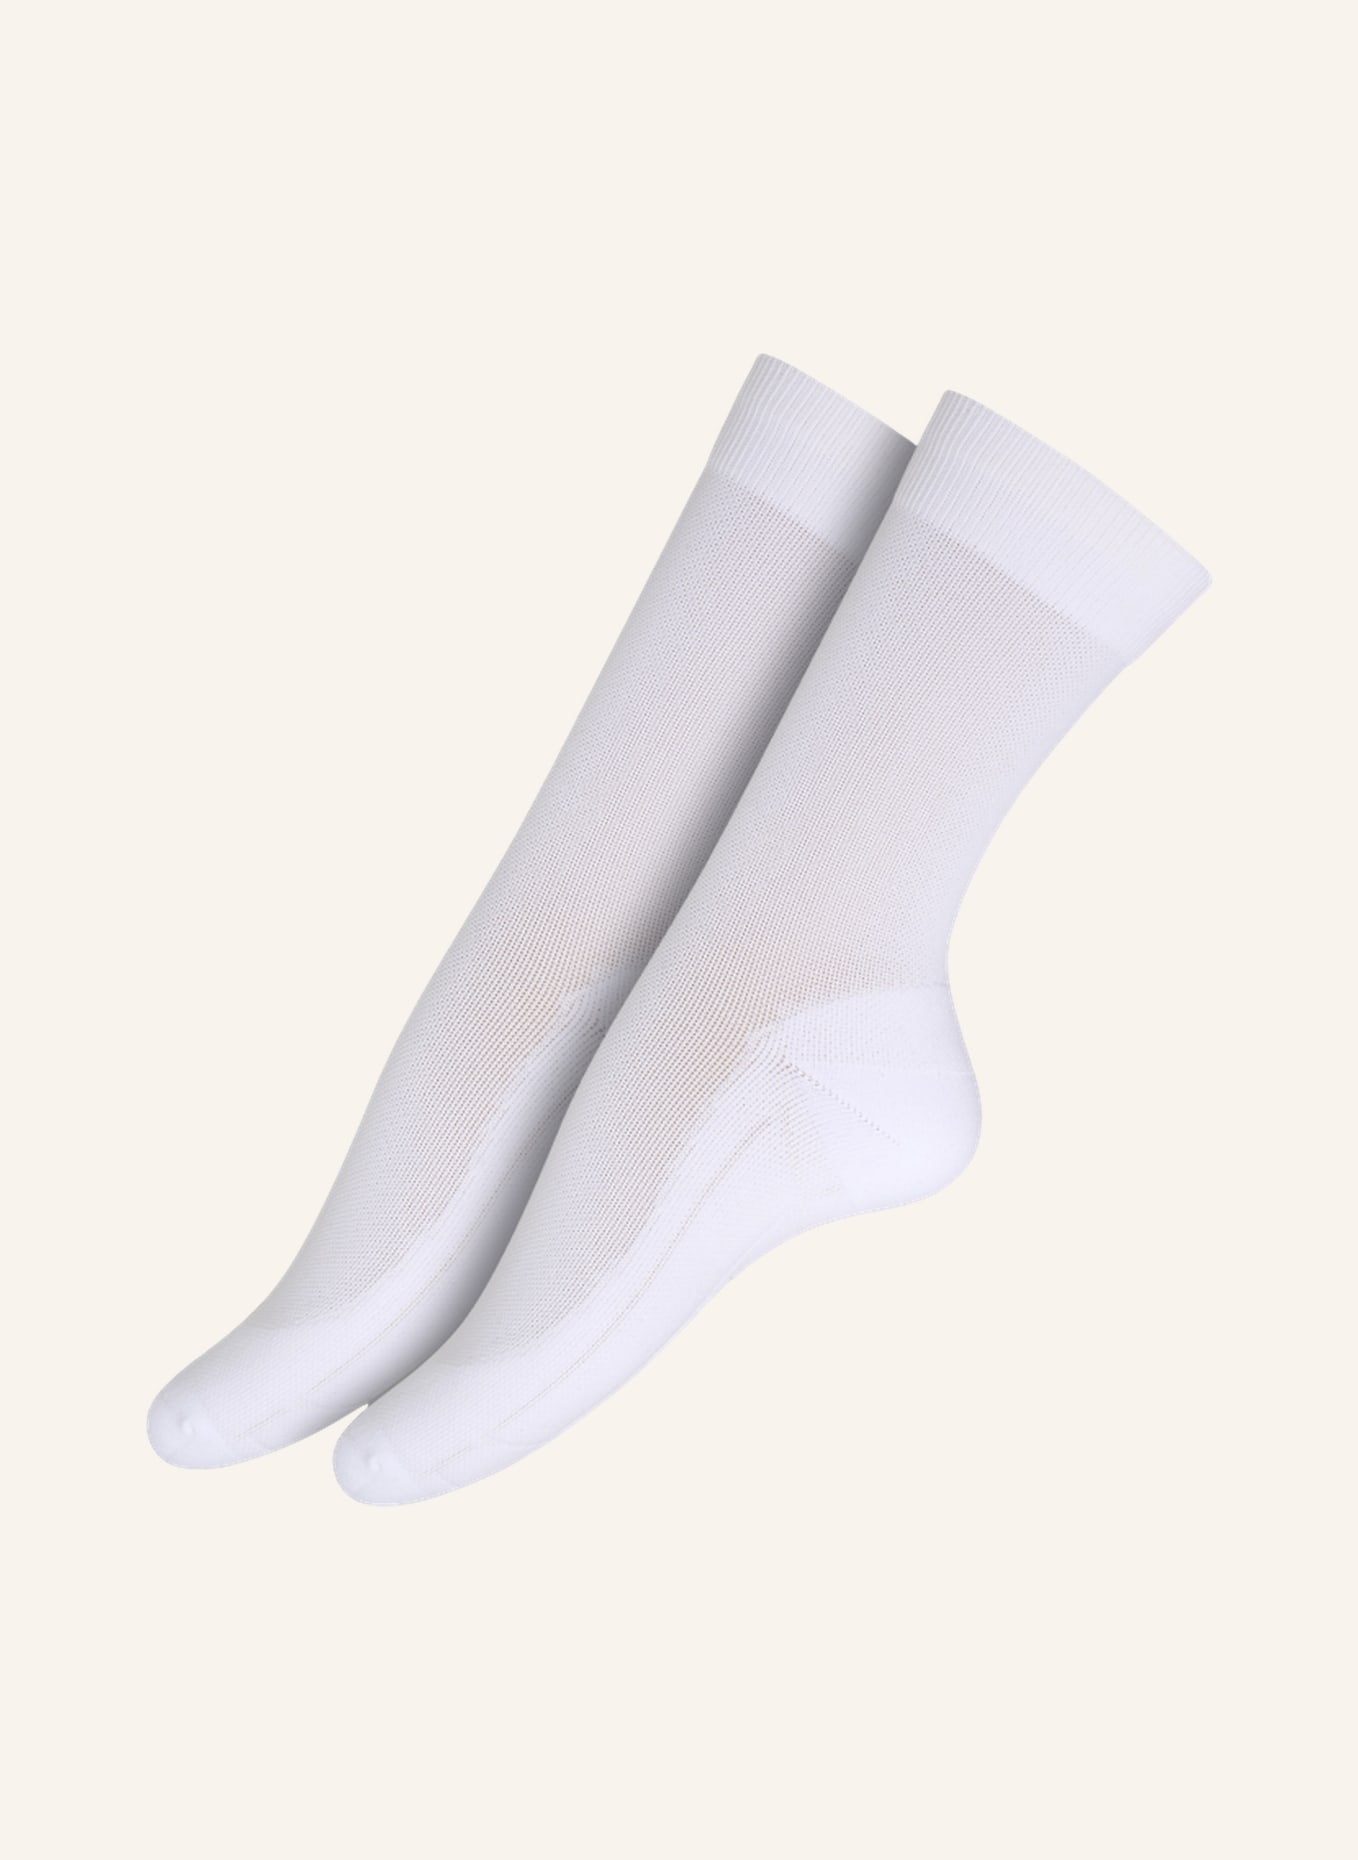 ITEM m6 2er-Pack Socken SNEAKER COTTON CONSCIOUS PIQUE mit Kompression, Farbe: WEISS (Bild 1)